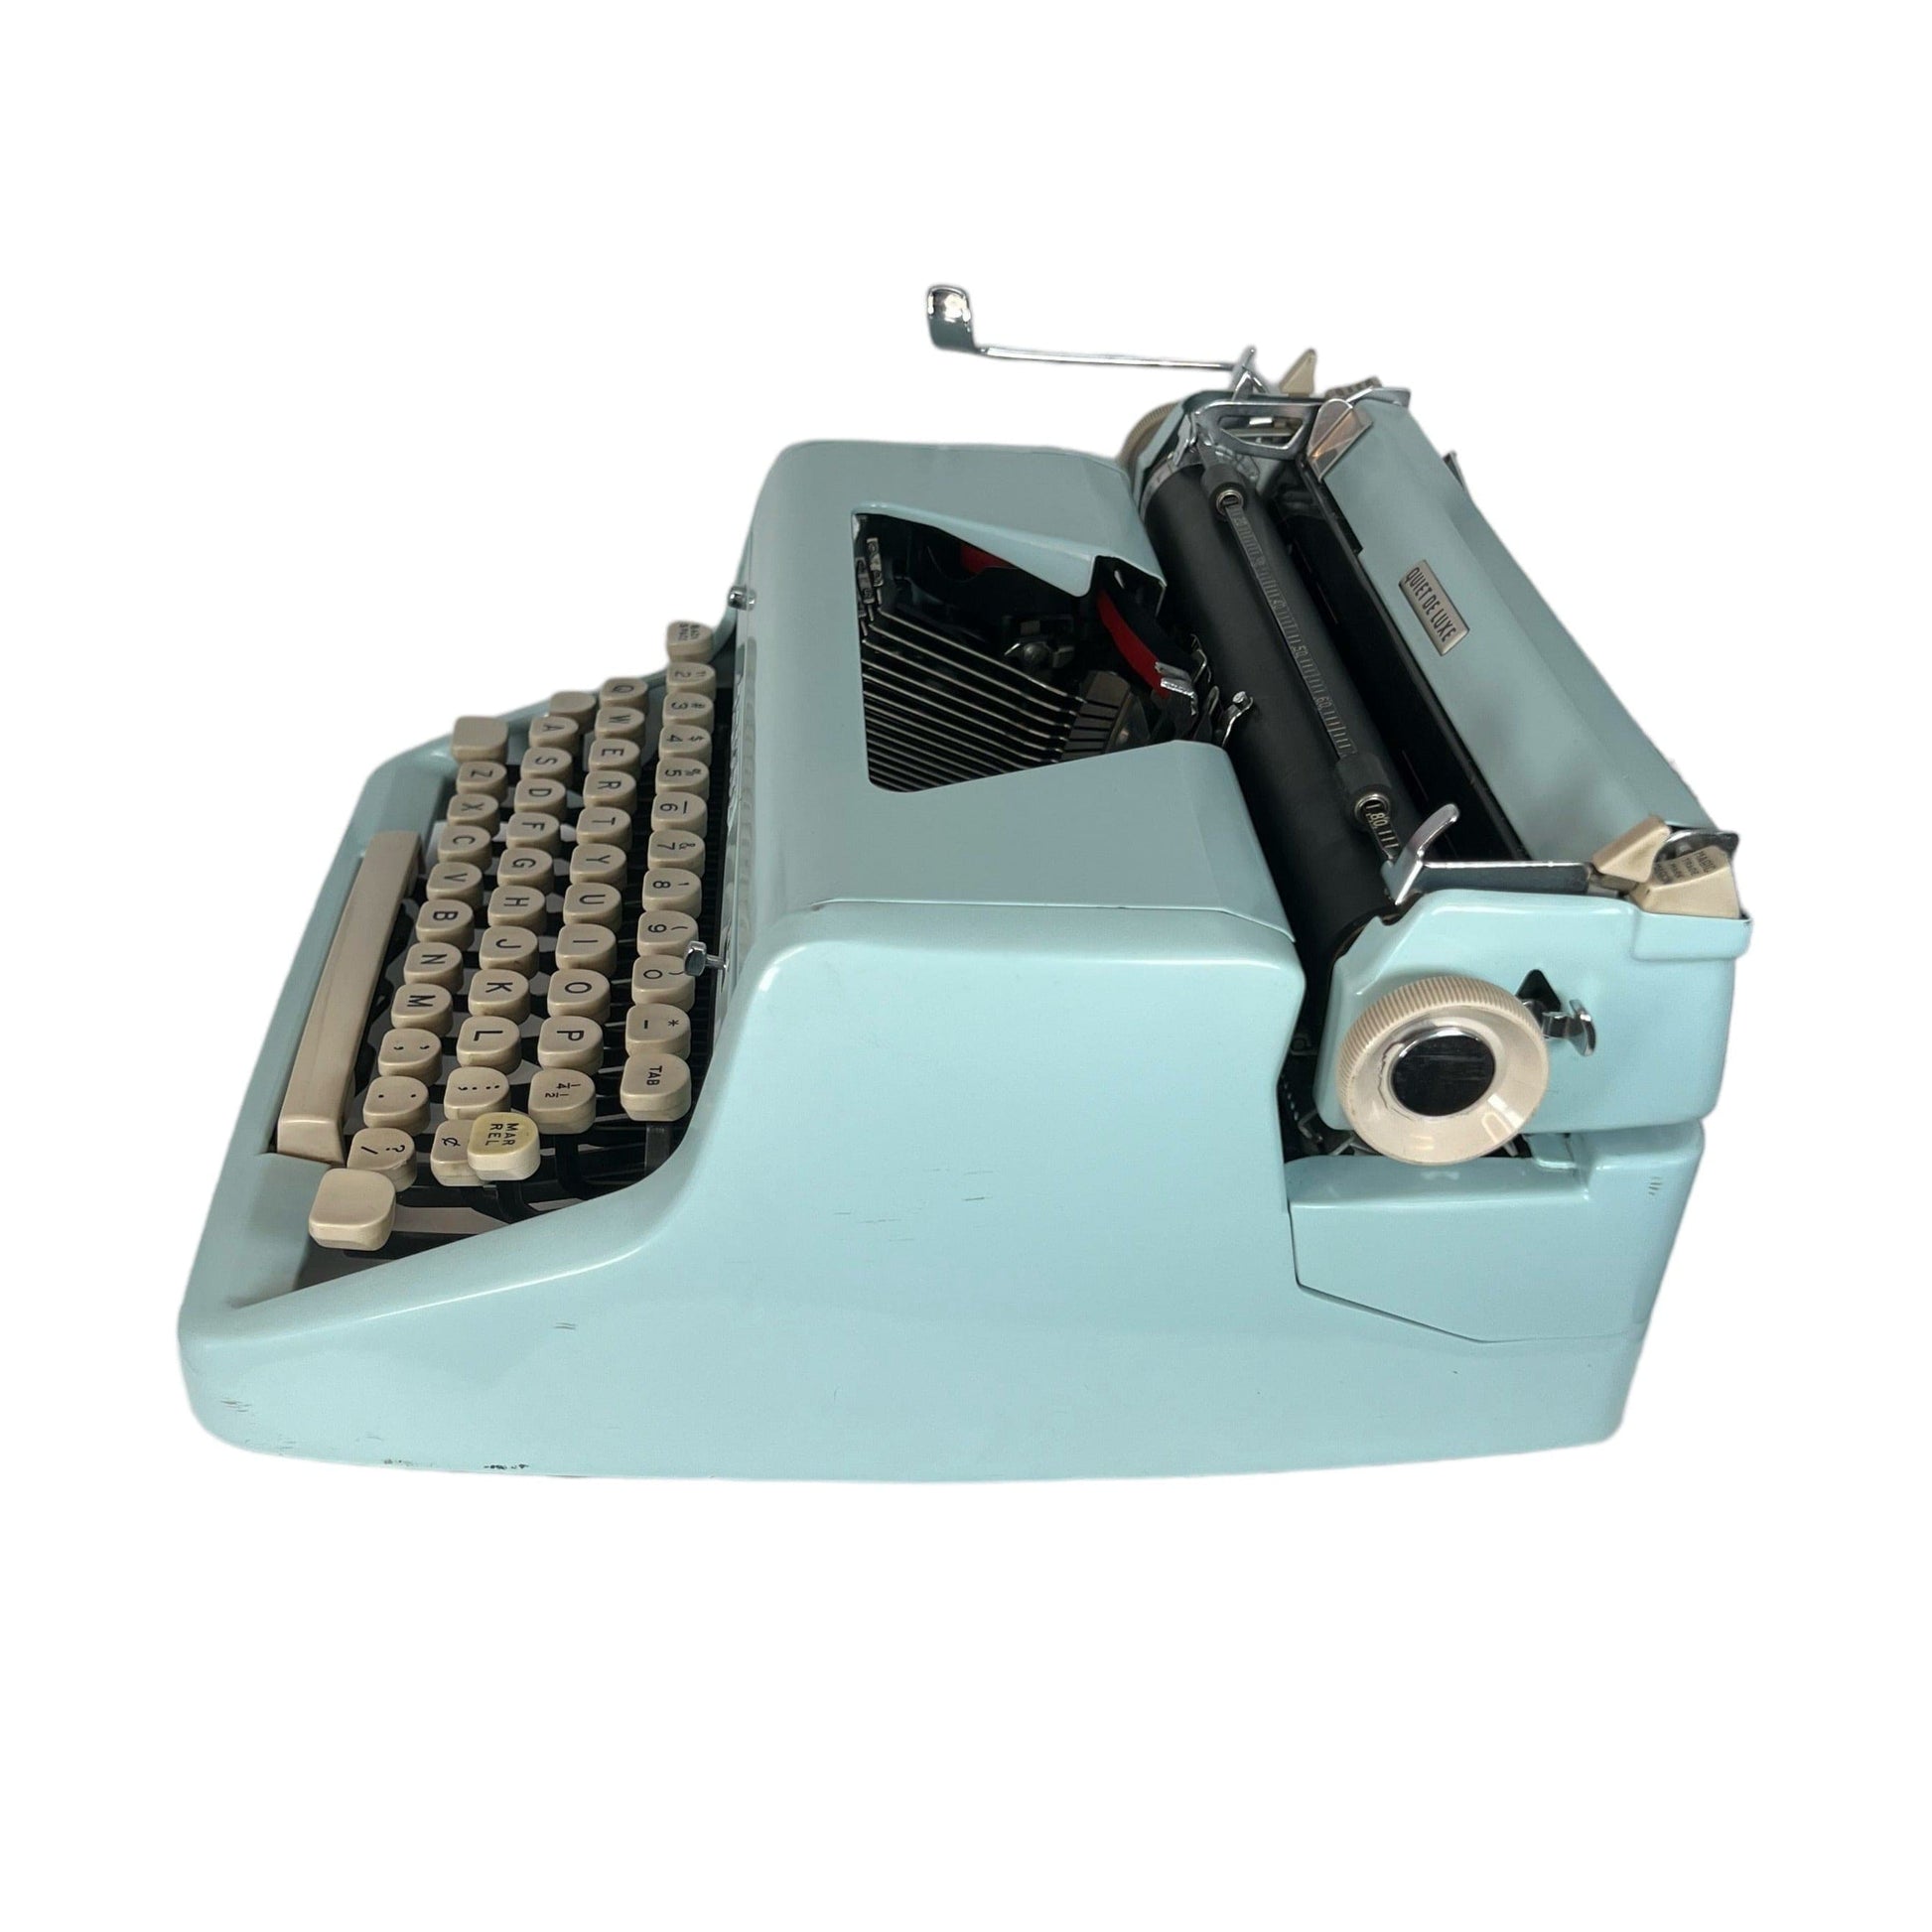 Toronto Typewriters Manual Typewriter Royal Quiet Deluxe (Alcony Blue) Typewriter